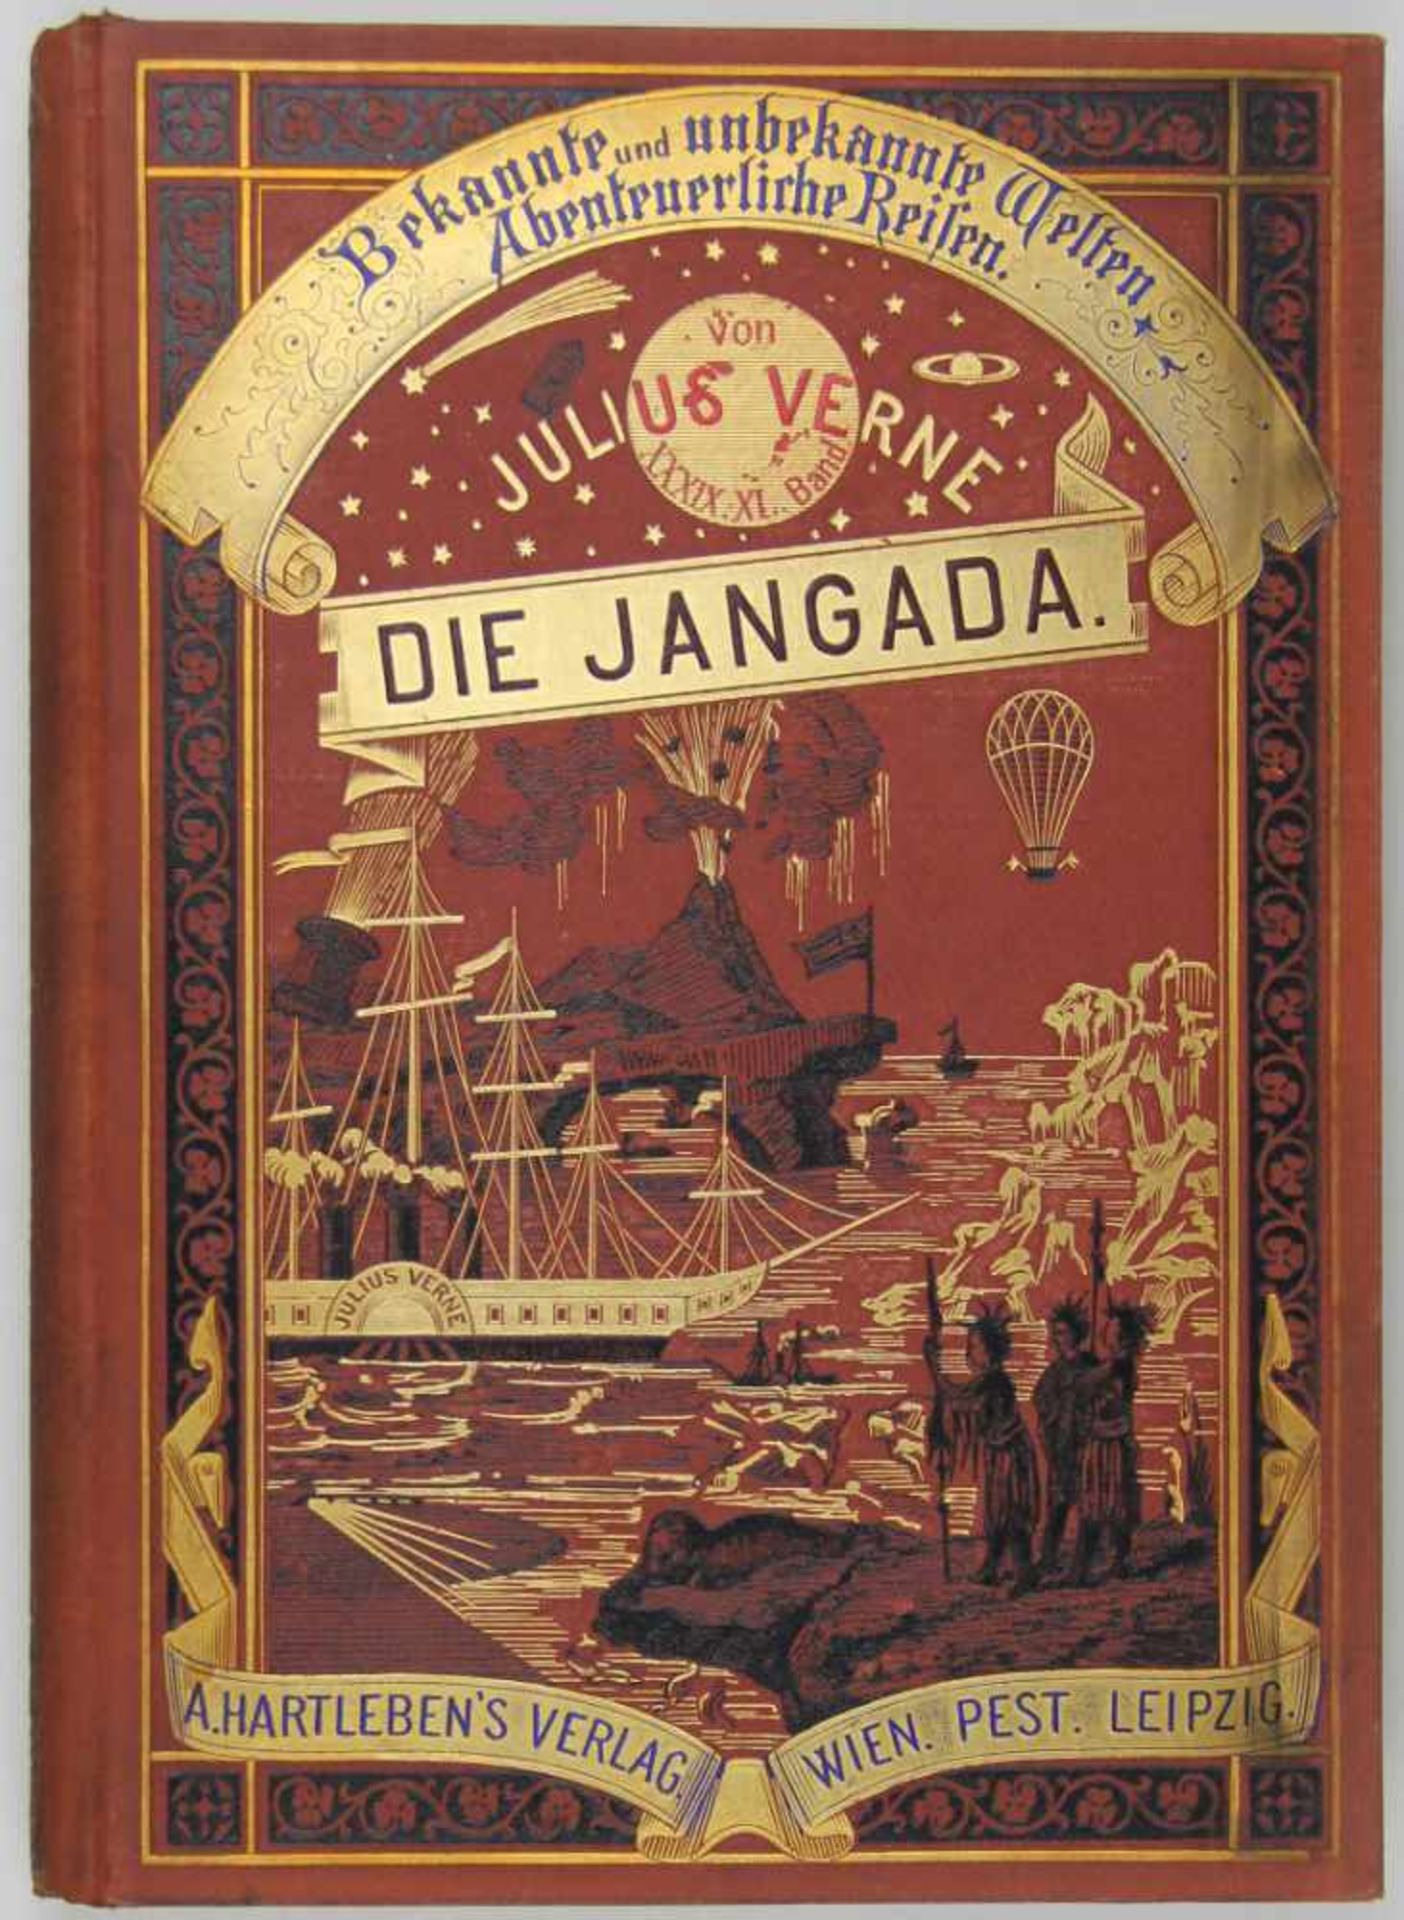 Verne, Jules: Die Jangada. Achthundert Meilen auf dem Amazonenstrom. Wien, Pest und Leipzig, A.